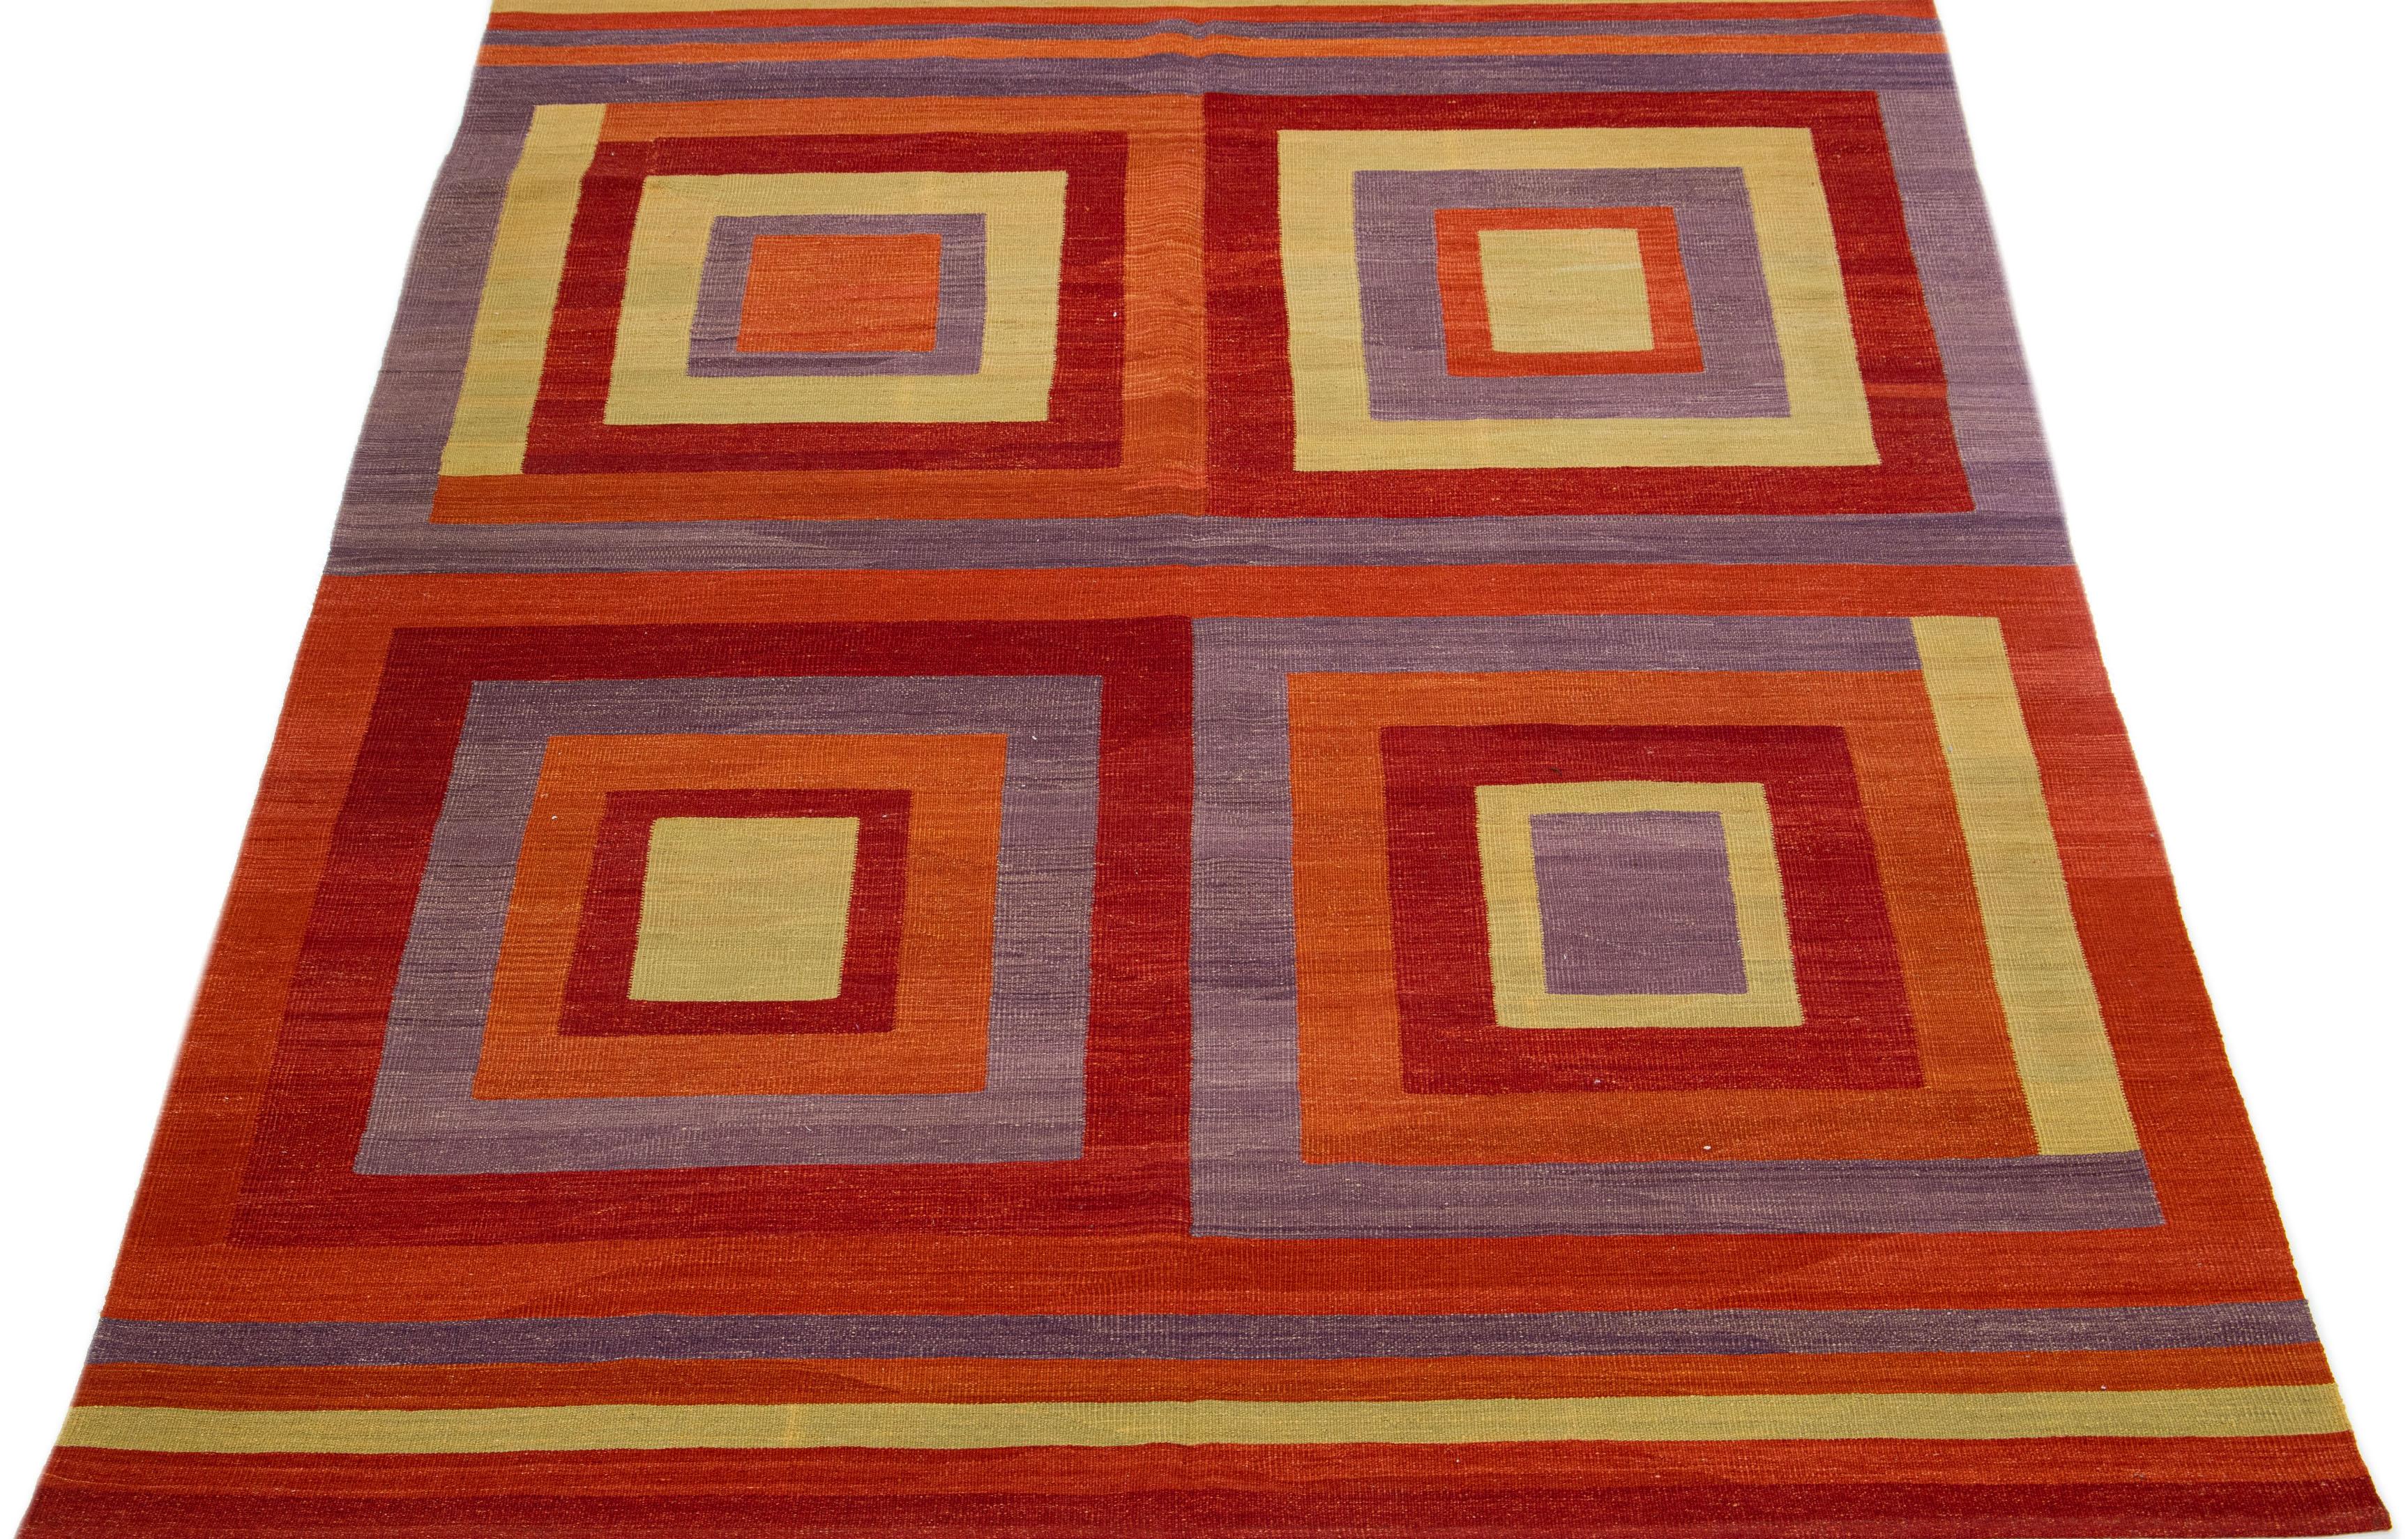 Ce tapis kilim contemporain présente un motif géométrique exubérant et détaillé sur toute sa surface. Il utilise diverses tonalités multicolores qui en font un élément indémodable de la décoration intérieure moderne.

Ce tapis mesure 6'11